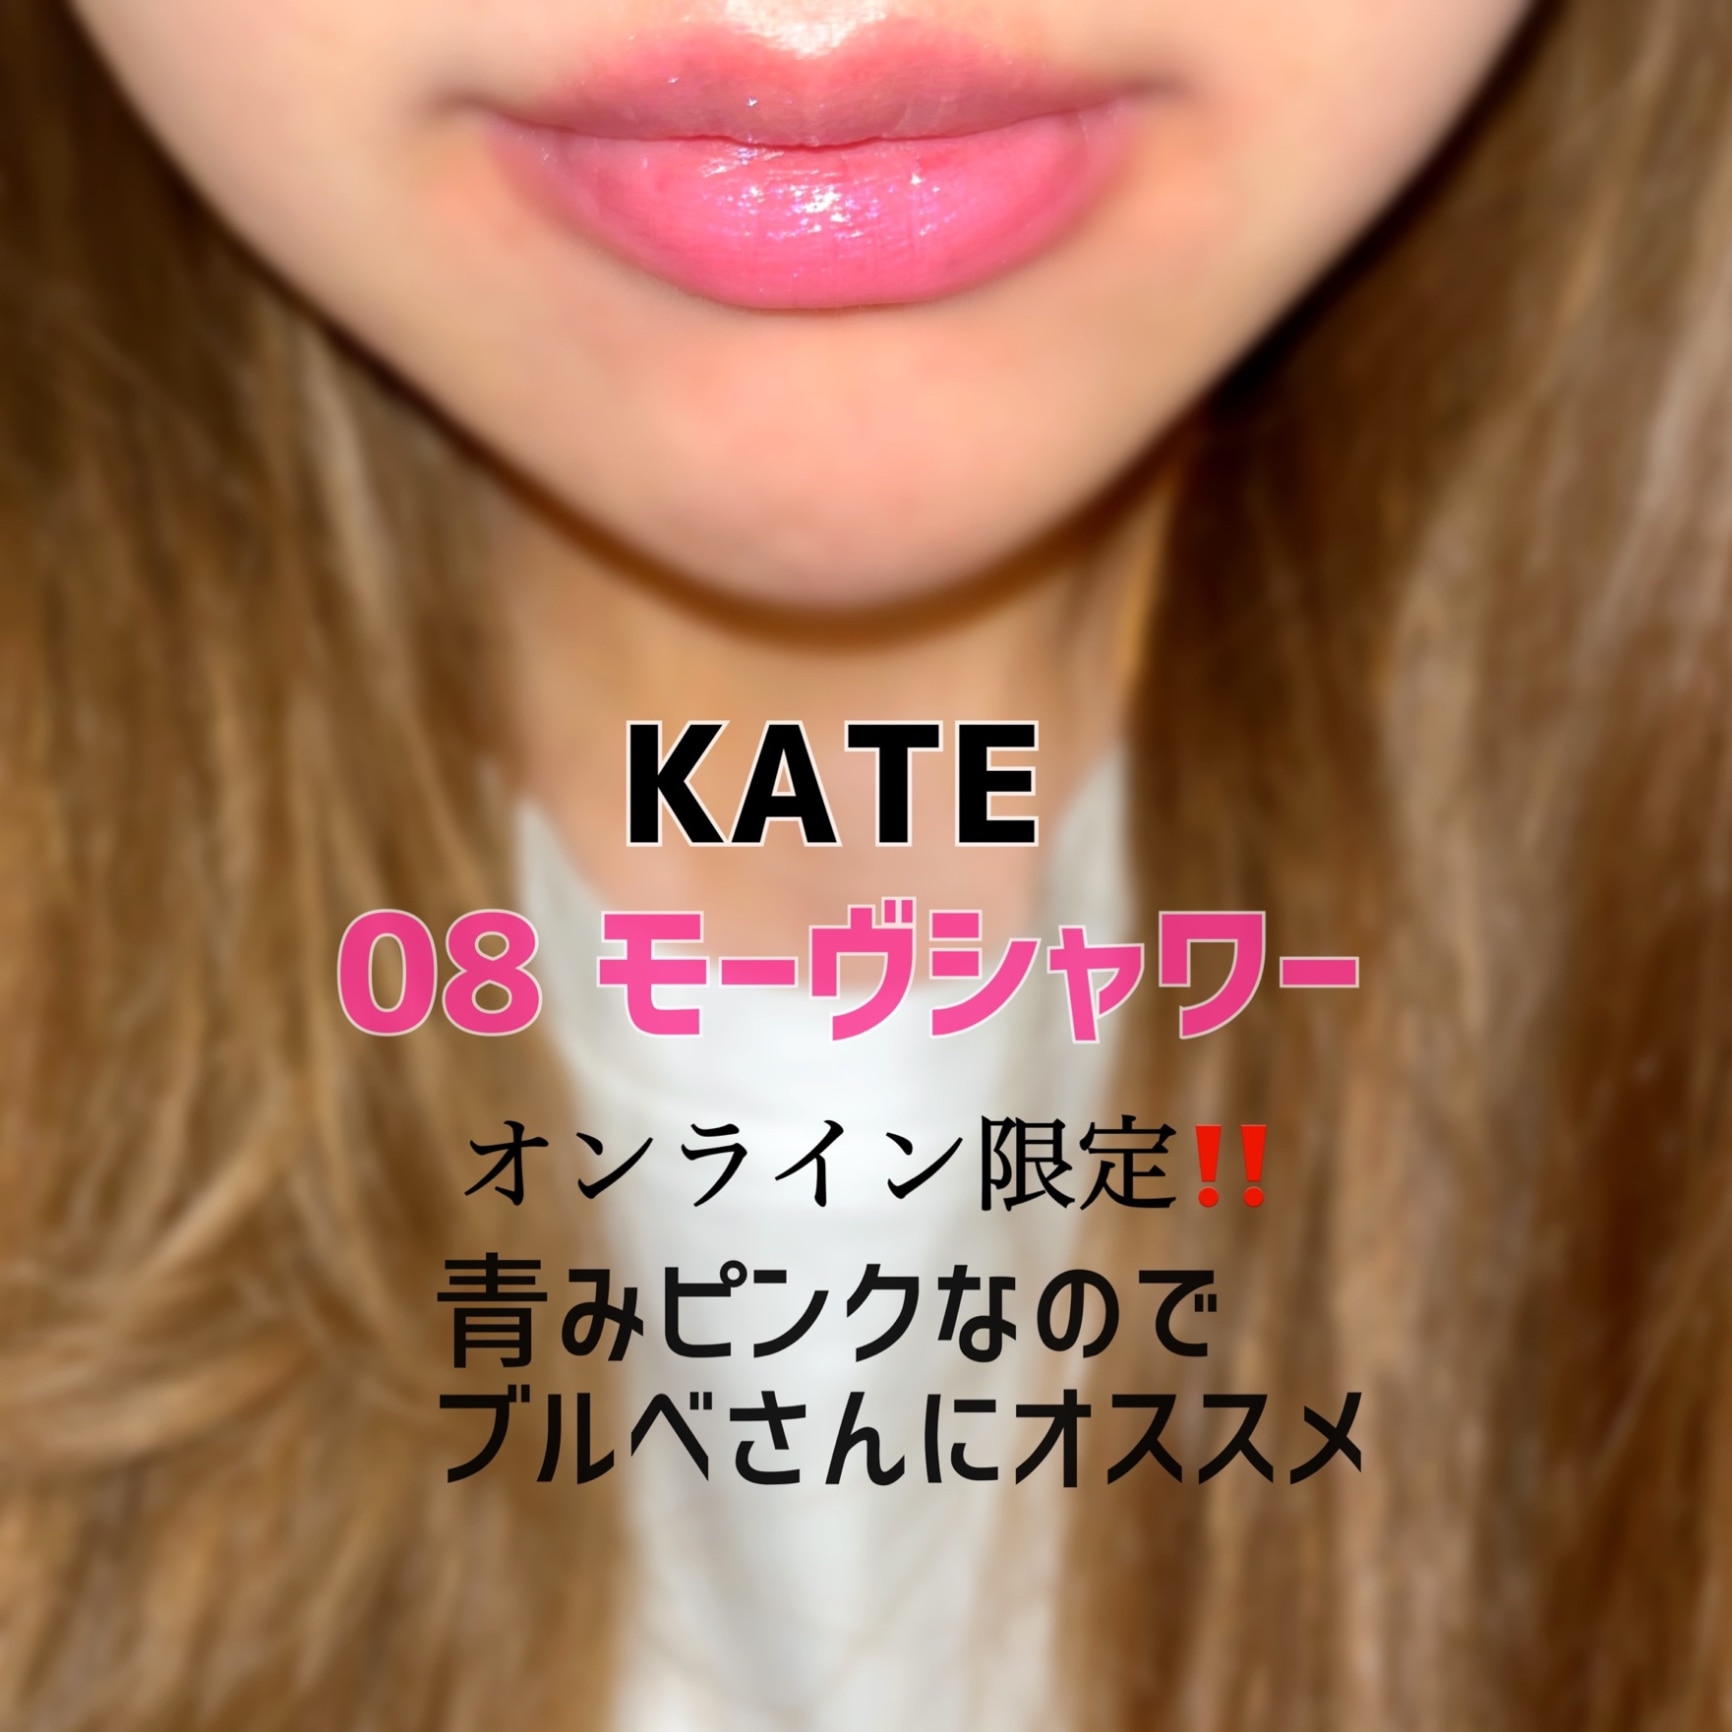 ケイト リップモンスター 08 モーヴシャワー(3.0g)【ka9o】【KATE